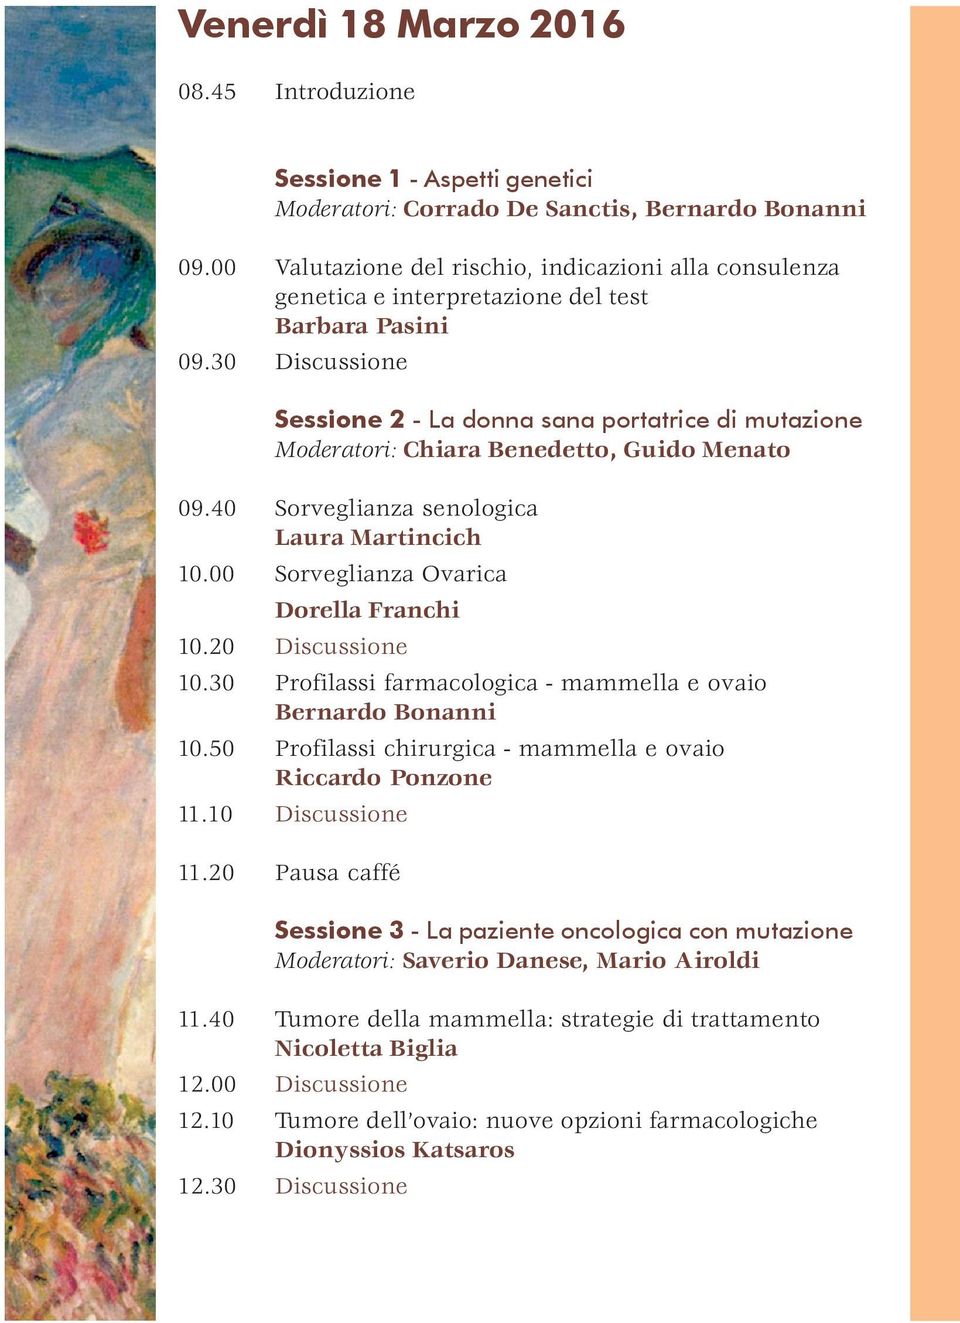 30 Discussione Sessione 2 - La donna sana portatrice di mutazione Moderatori: Chiara Benedetto, Guido Menato 09.40 Sorveglianza senologica Laura Martincich 10.